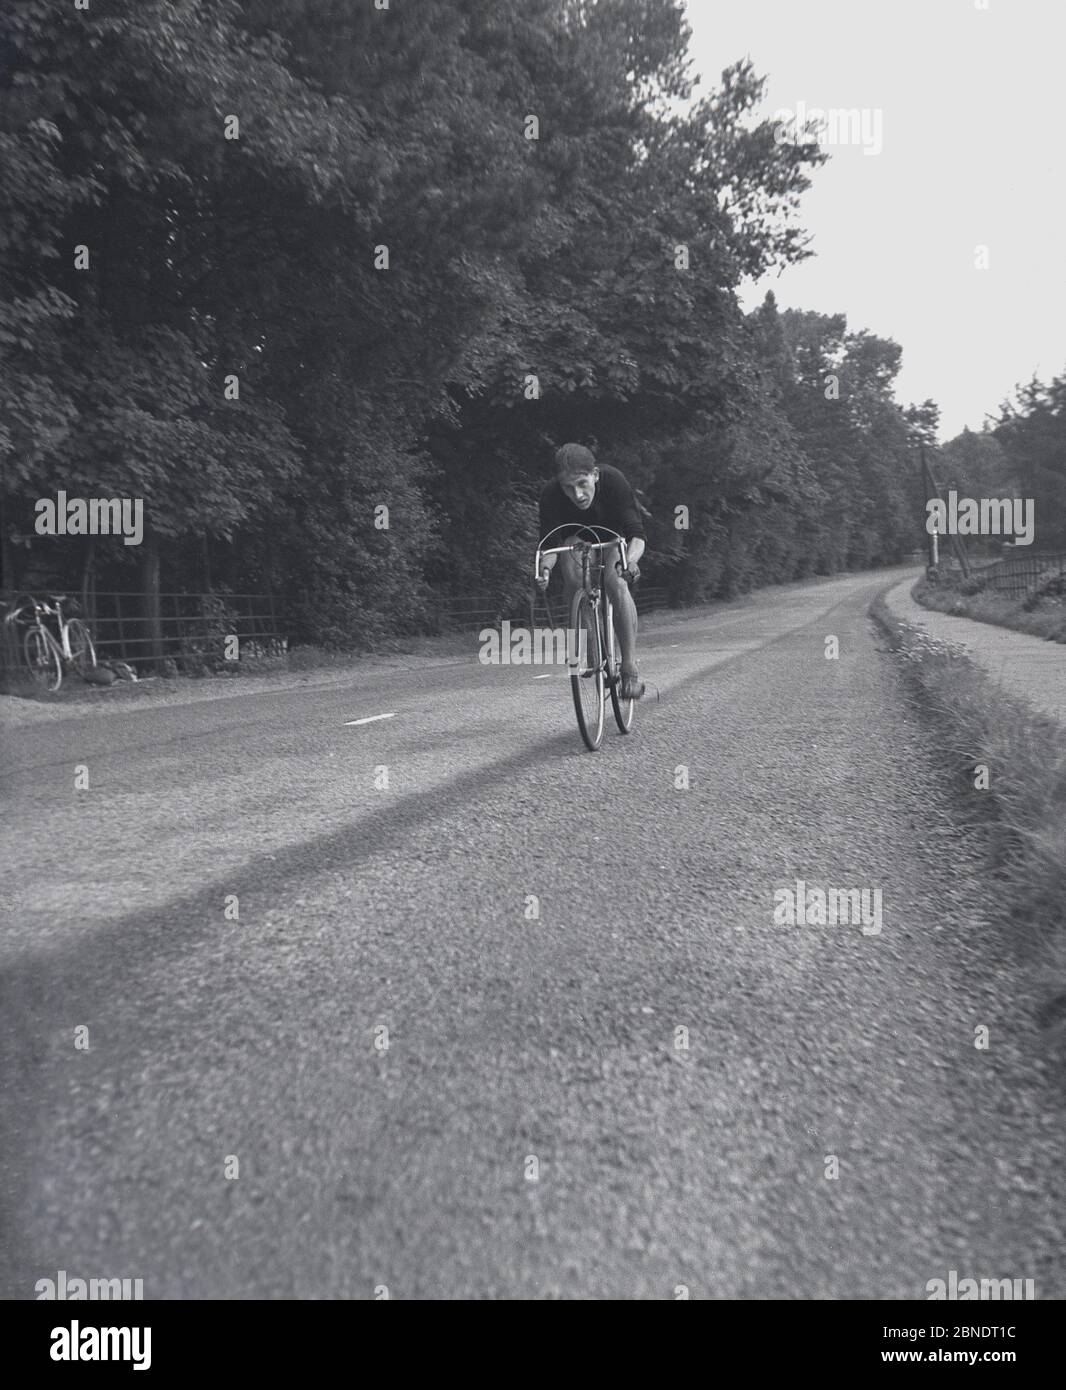 1950, histórico, un ciclista en una bicicleta de carreras a lo largo de una carretera rural vacía, posiblemente en un evento de prueba de tiempo, Inglaterra, Reino Unido. Foto de stock